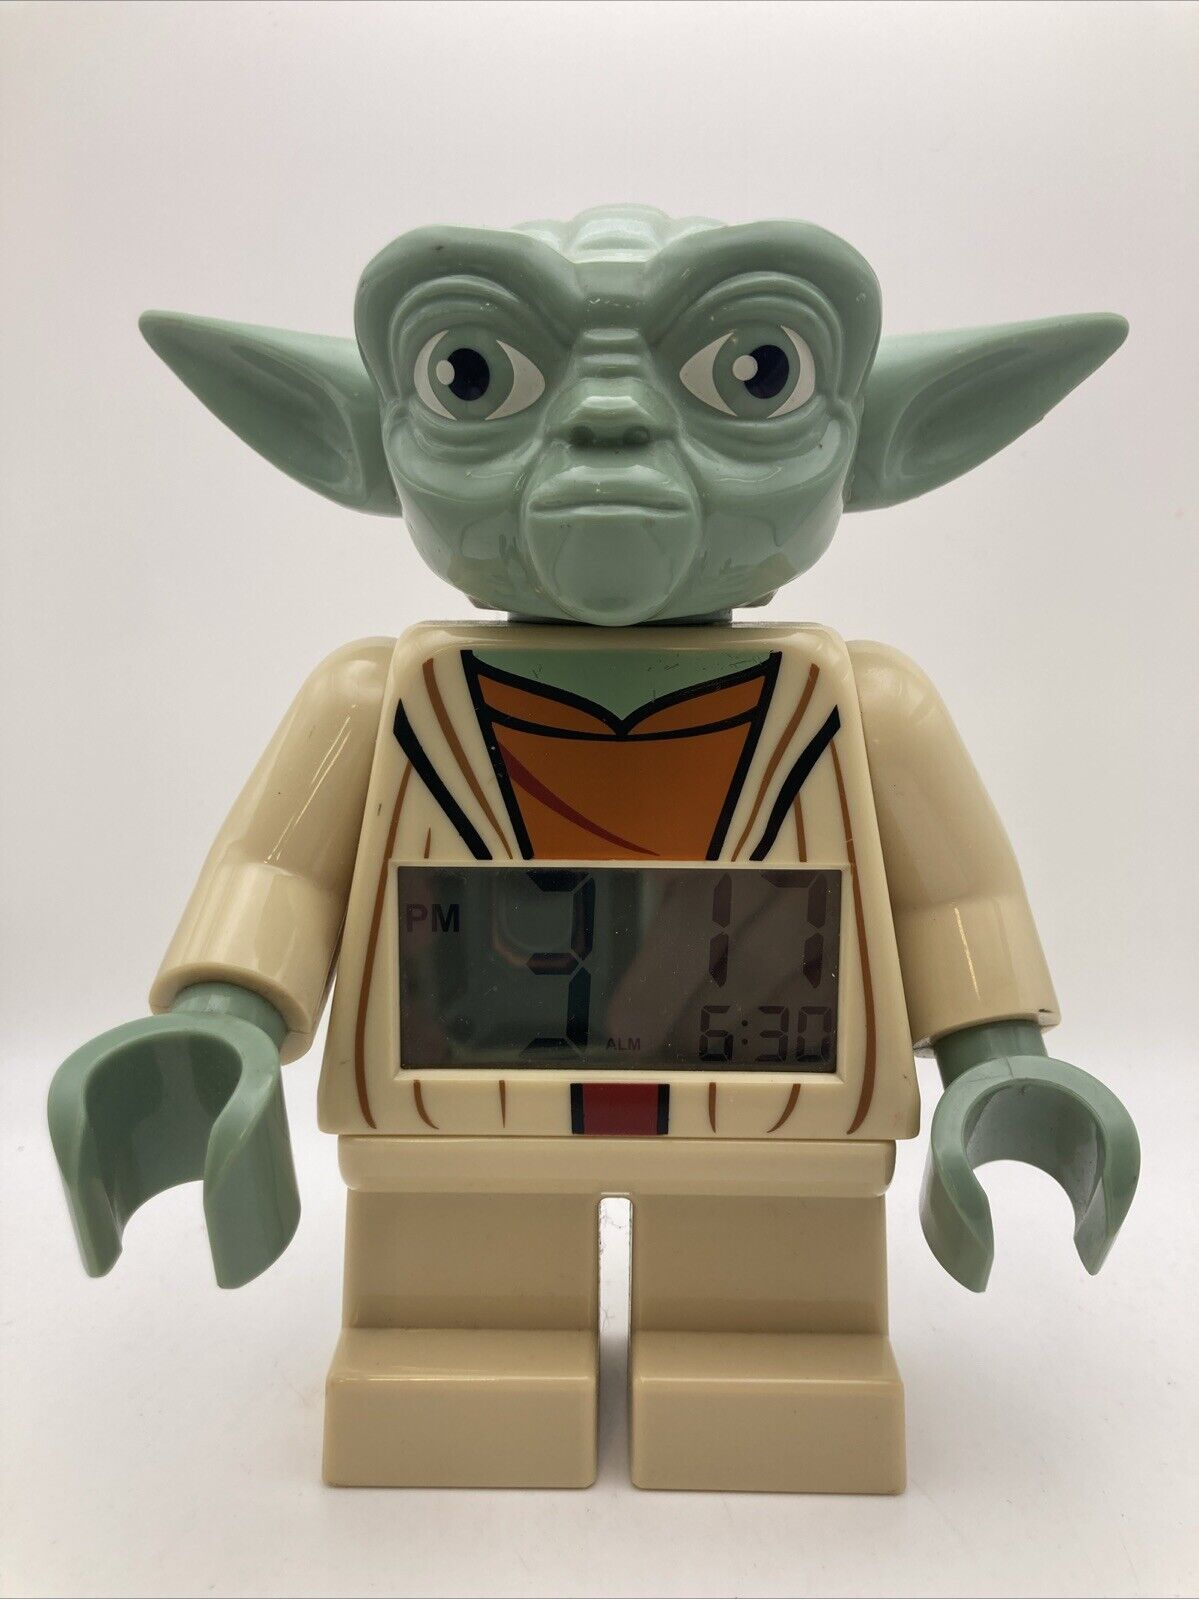 Lego Star Wars Yoda Digital Alarm Clock 7” Tall